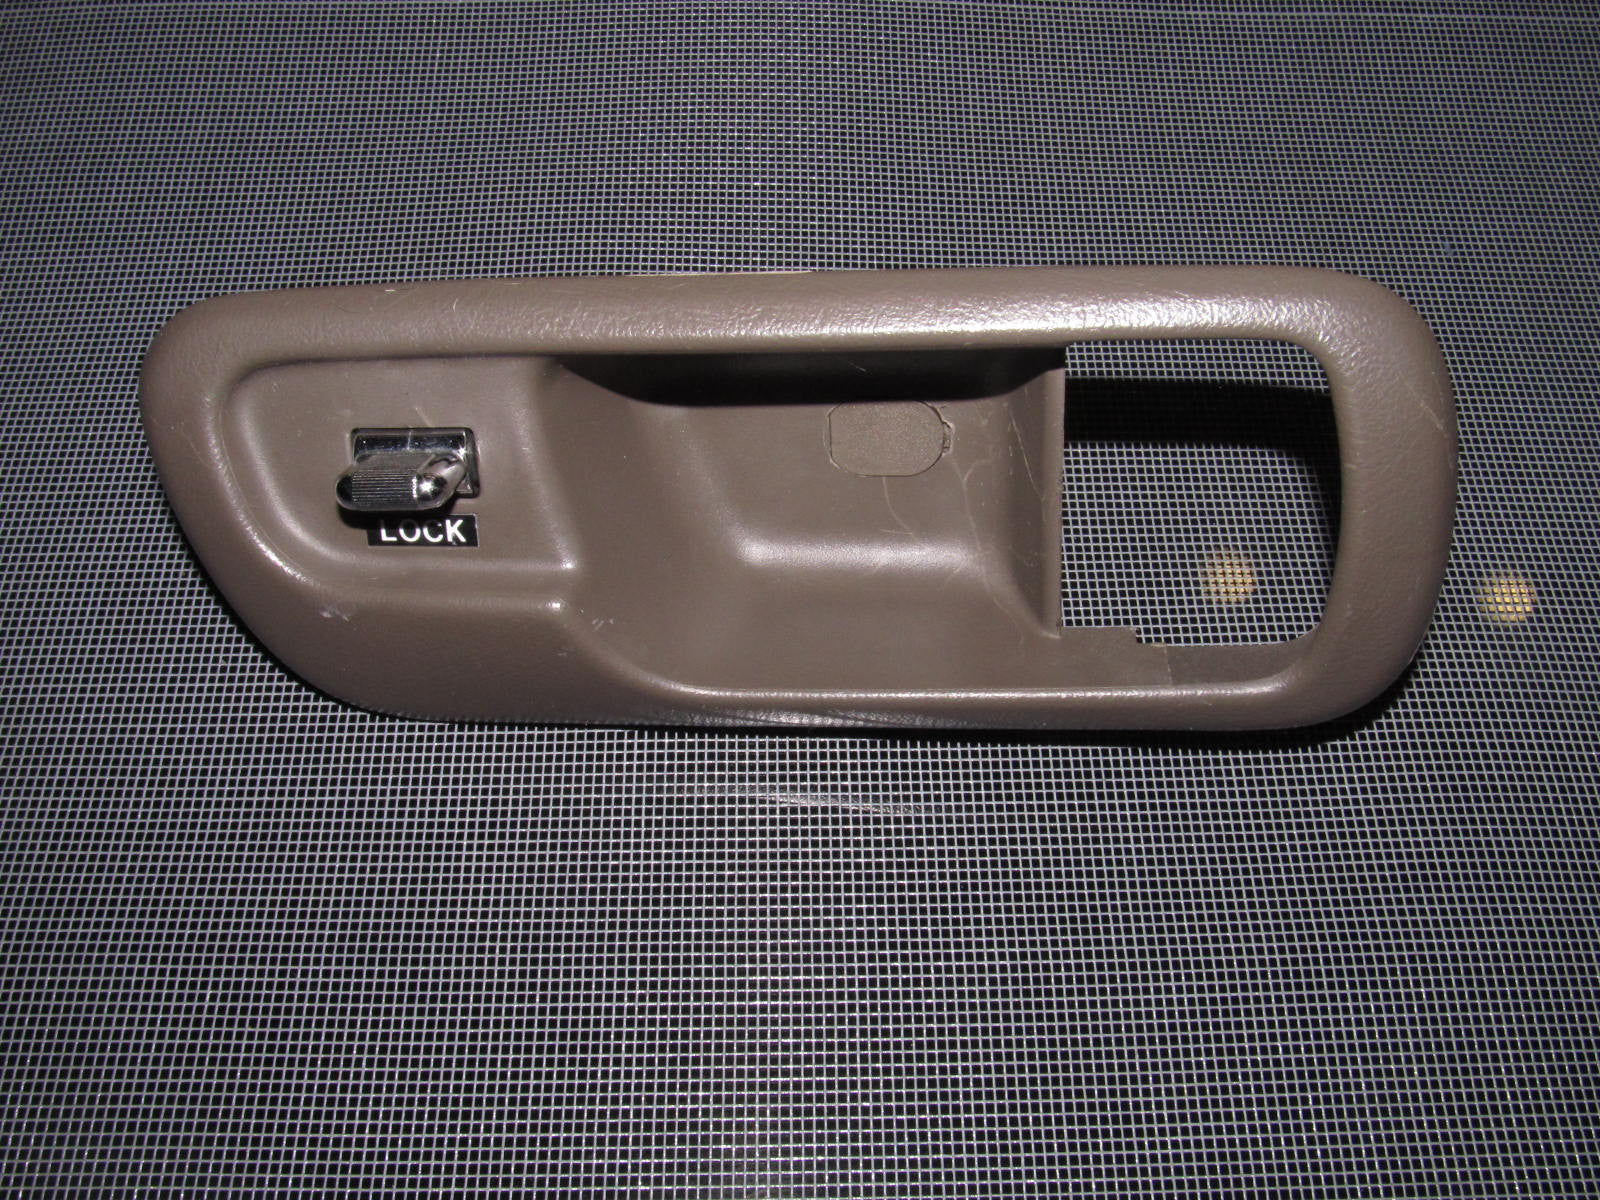 94-01 Acura Integra OEM Brown Door Lock Bezel with Power Door Lock Switch - Passenger's Side - Right